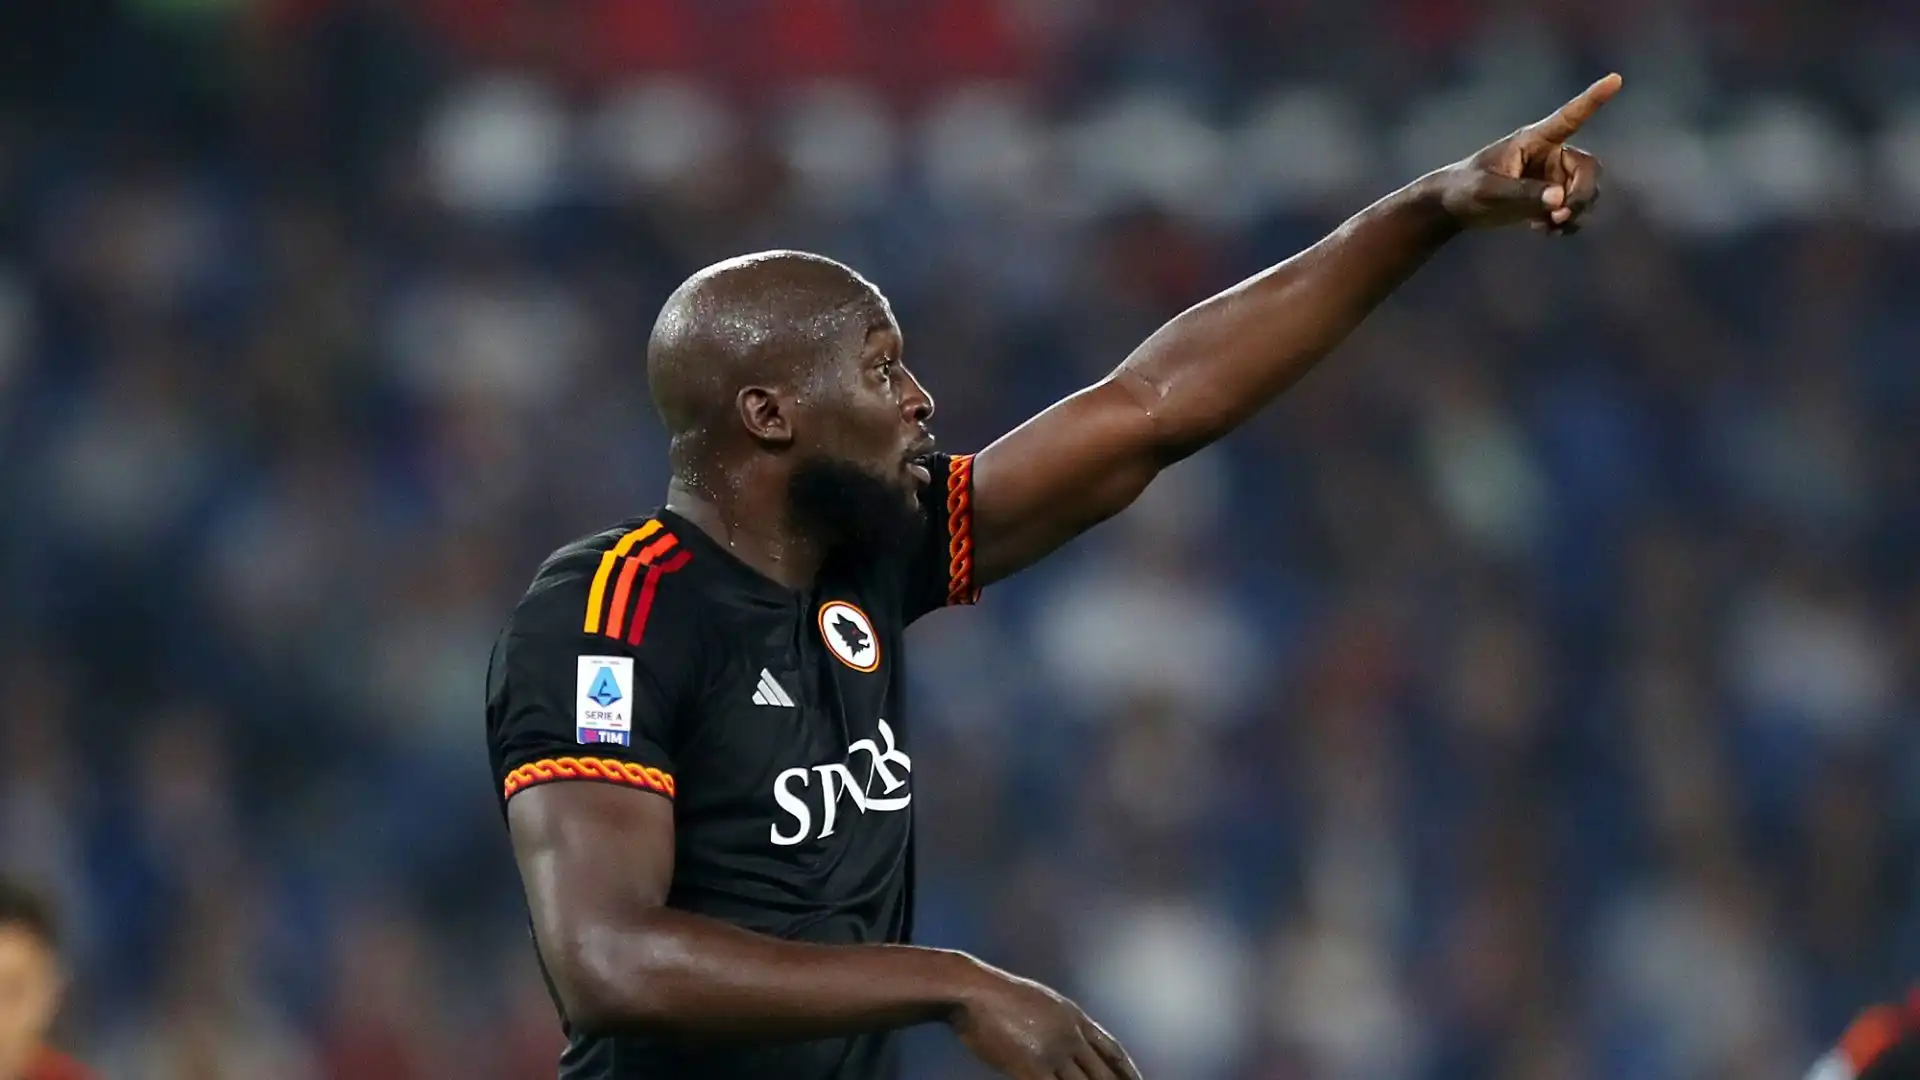 L'attaccante belga è stato dichiarato "traditore" dai tifosi nerazzurri dopo il turbolento addio avvenuto in estate